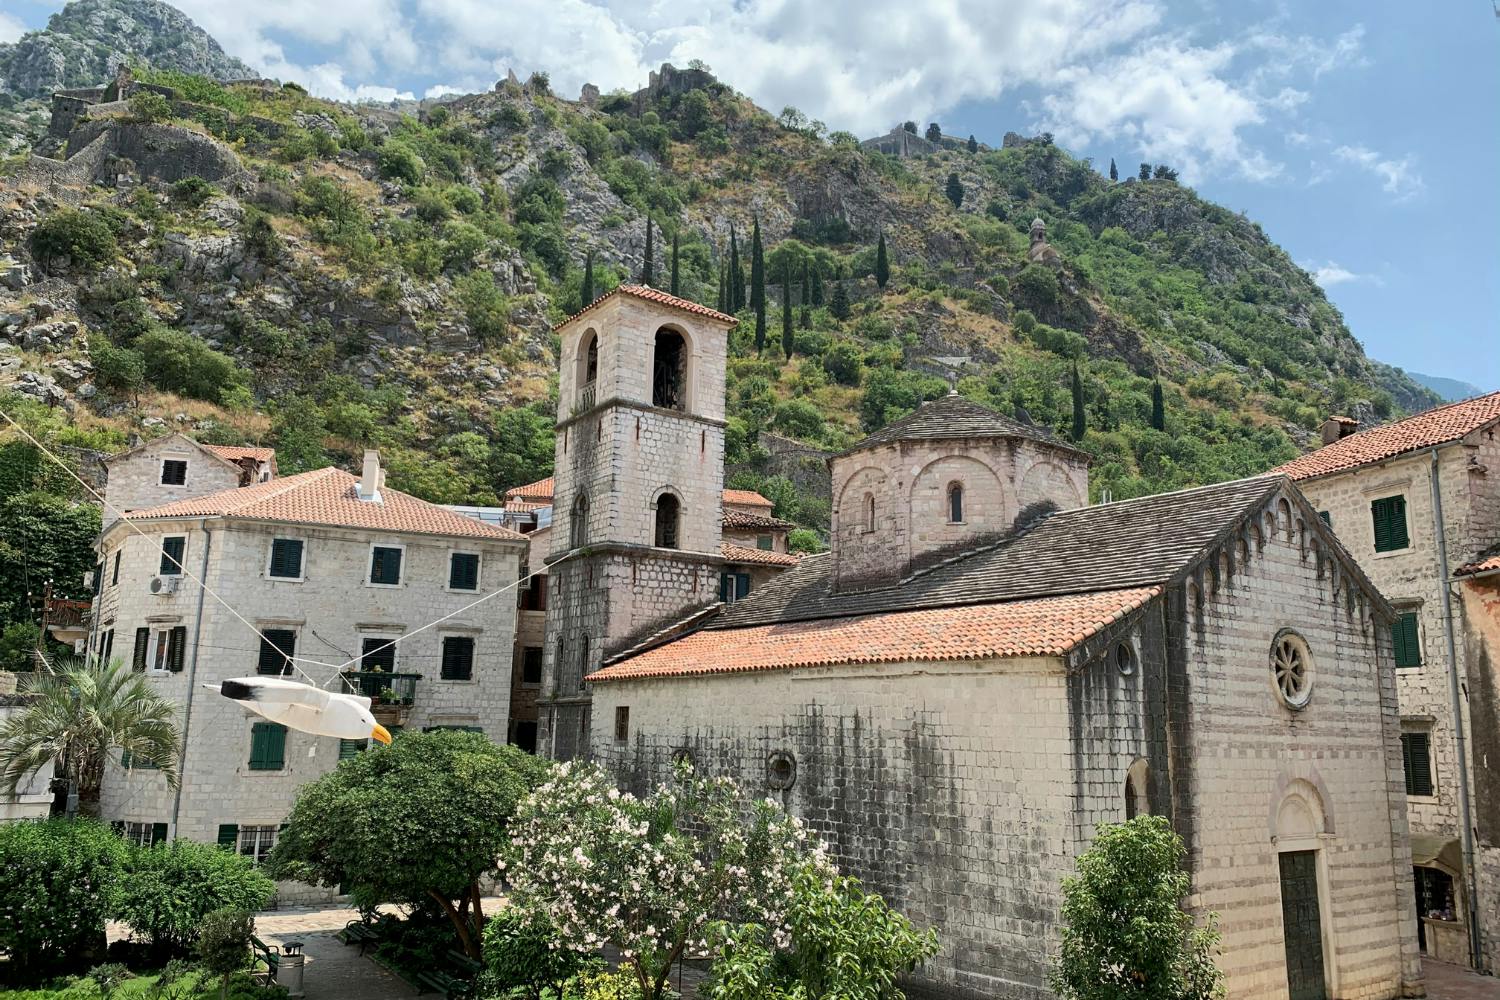 Samodzielny spacer odkrywczy po Kotorze - średniowieczne uliczki Starego Miasta